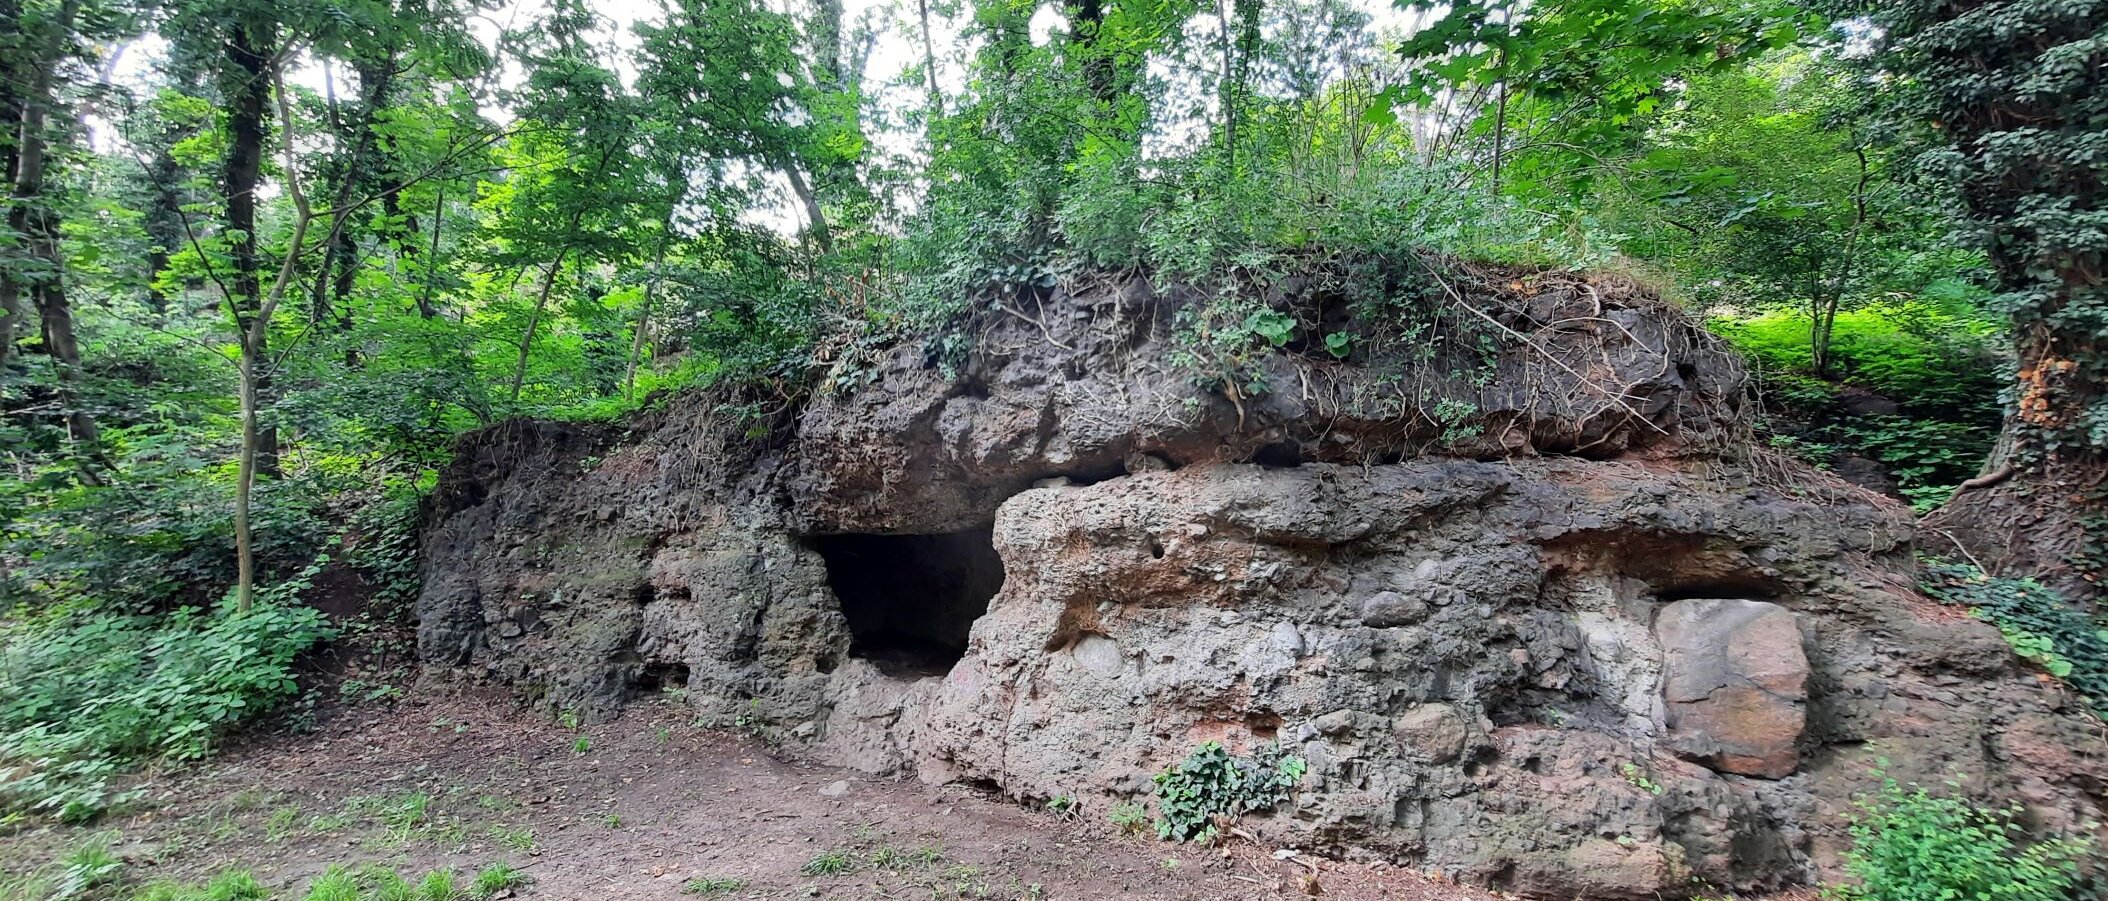 Höhle im Fels, von Bäumen und Sträuchern umgeben 